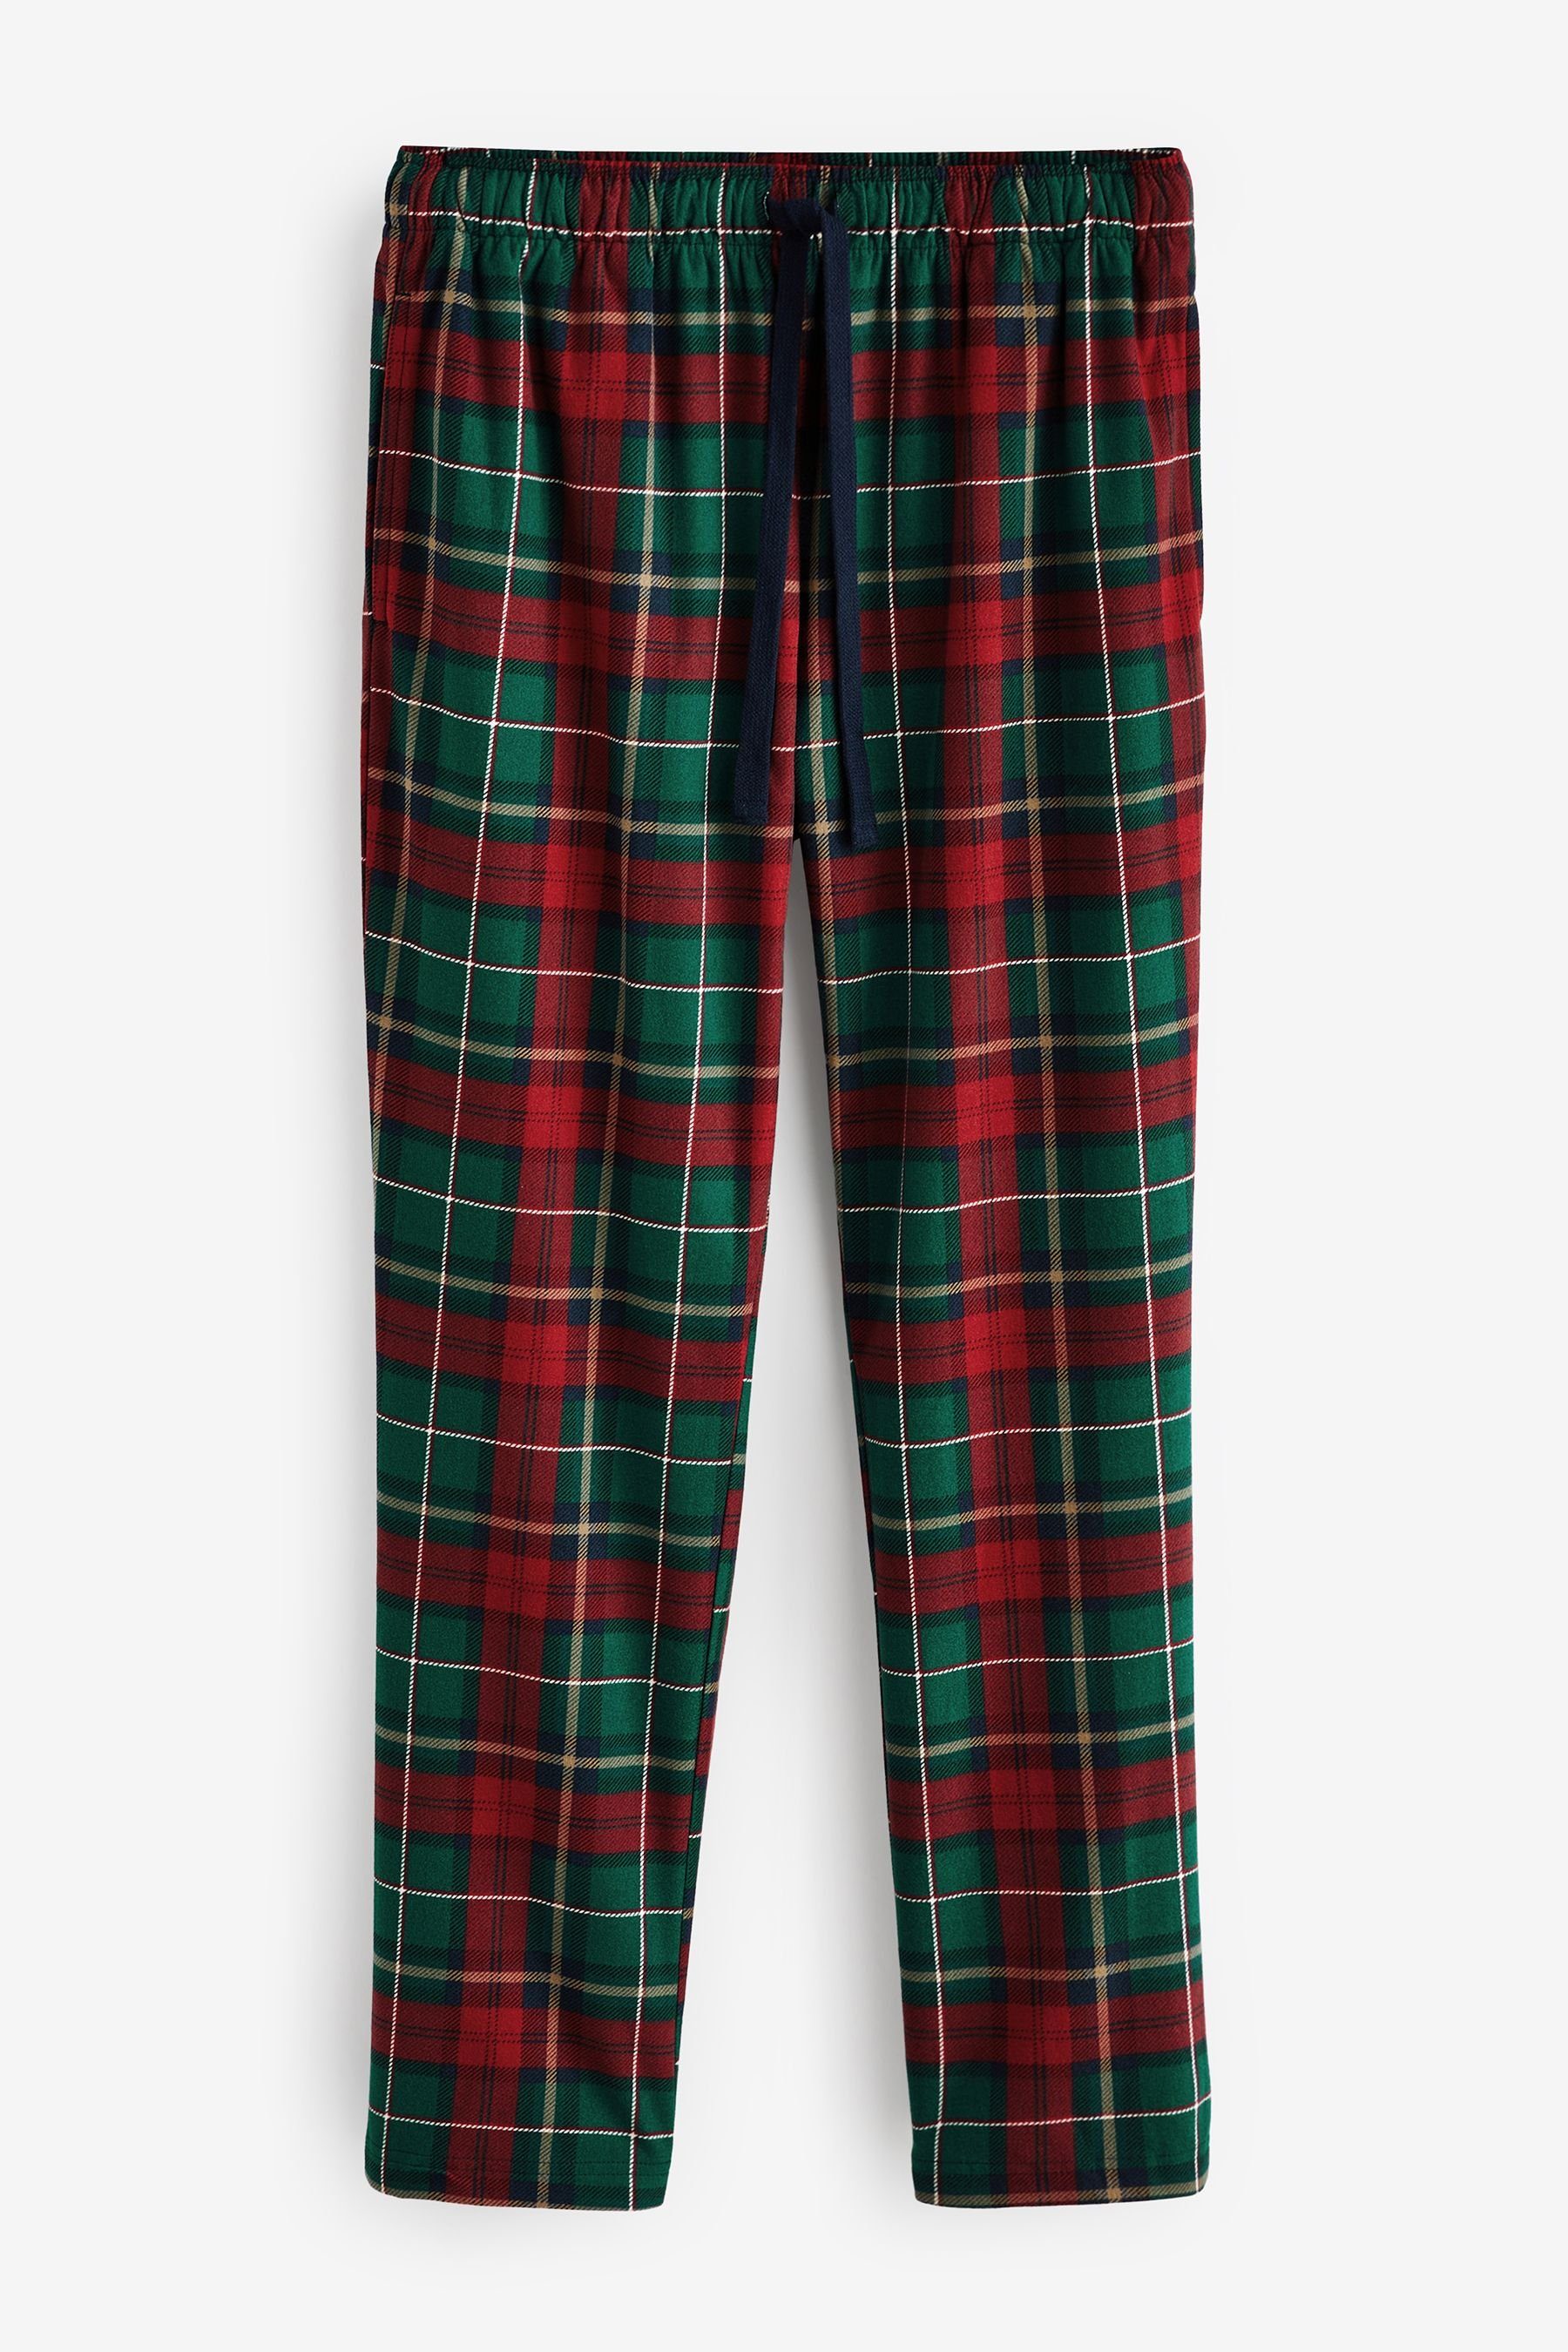 Motionflex Check (2 Bequemer Pyjama tlg) Green/Red Next Schlafanzug